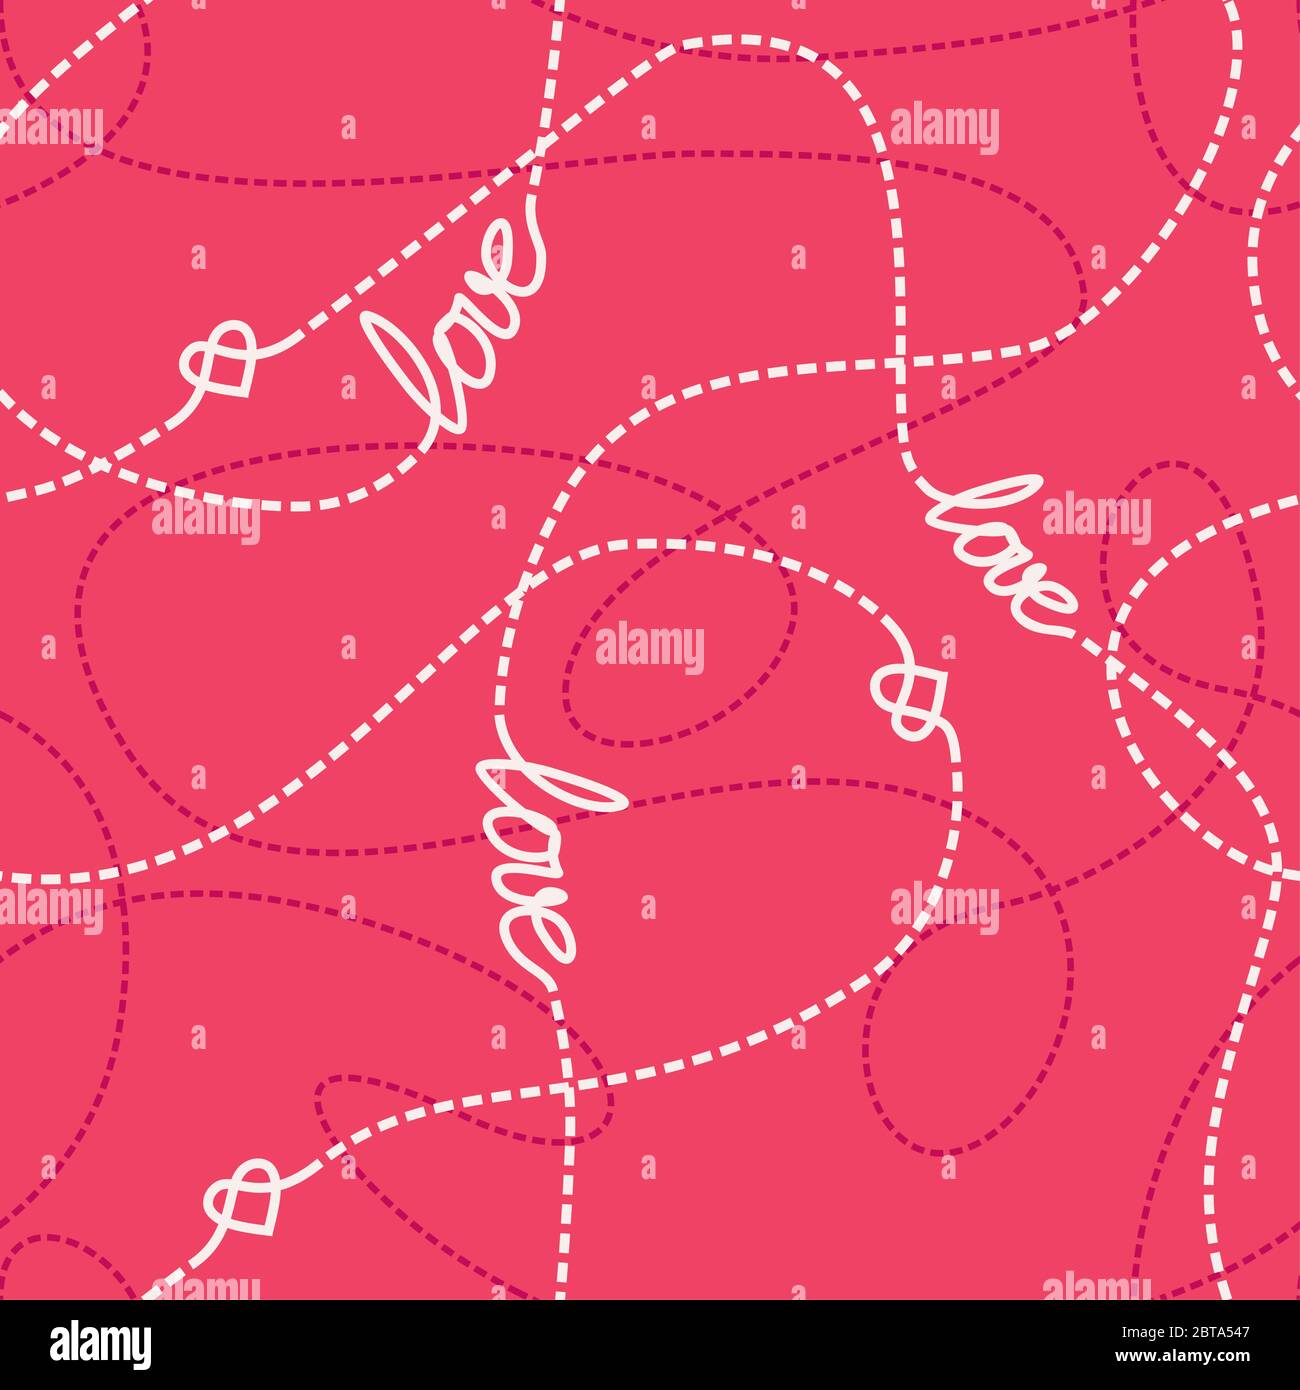 Vektor nahtlose Muster mit Liebe Worte, Herzen und verworrene gestrichelte Linien. Wiederholende abstrakte Hintergrund für romantisches Design. Liebe konzeptuelle Textur. Stock Vektor